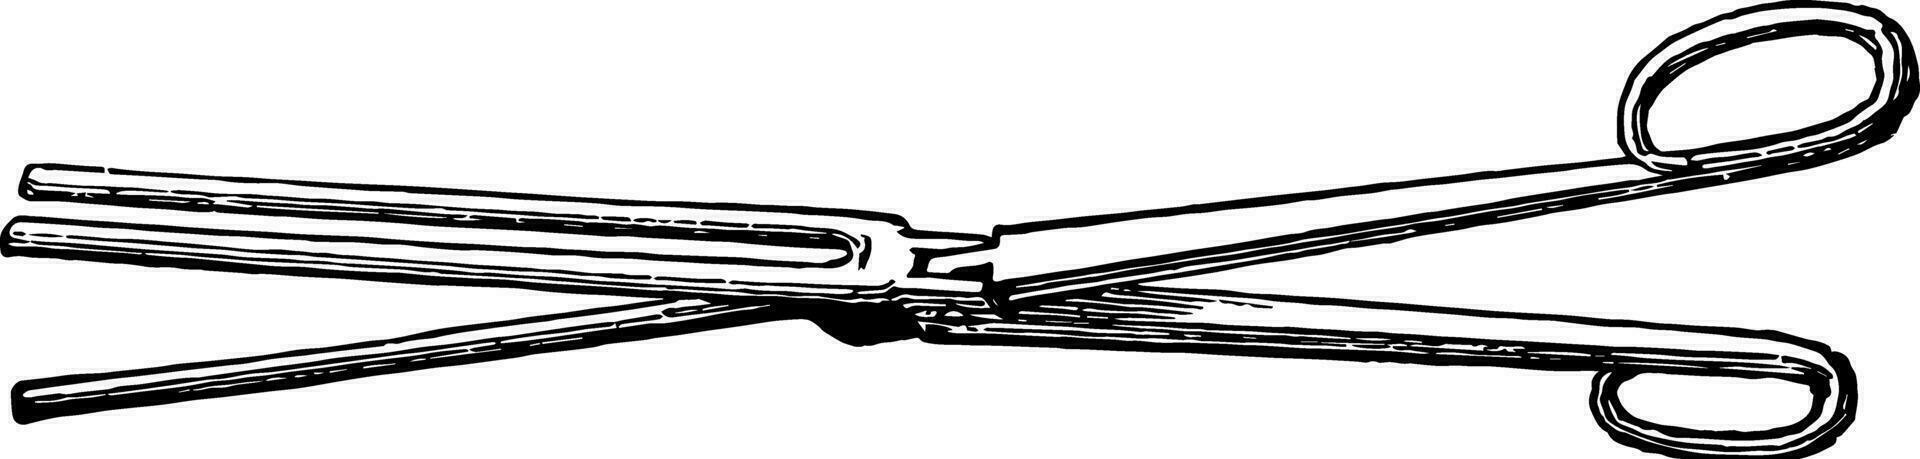 fluiten schaar vormig implementeren voor fluiten of krimpen linnen, wijnoogst gravure. vector